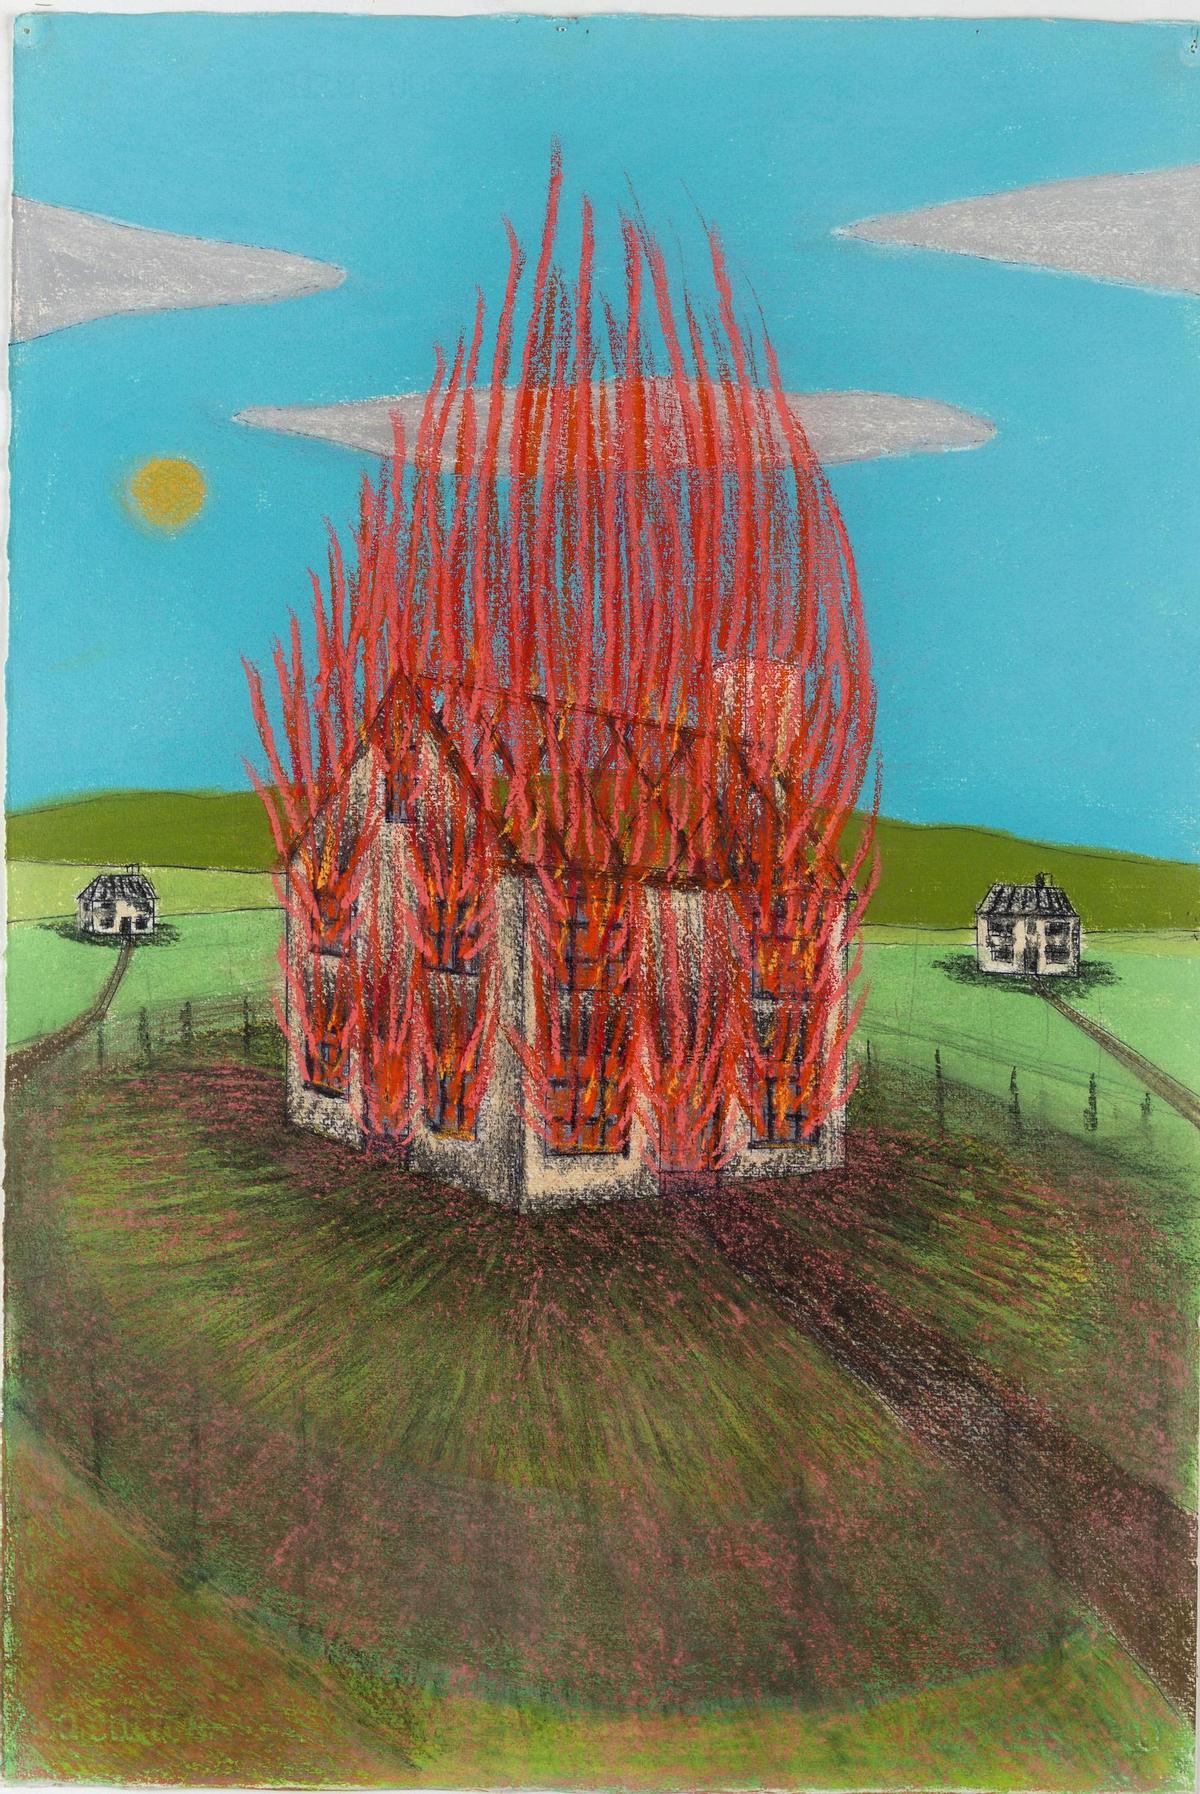 House on Fire, 2005, de John Davies.